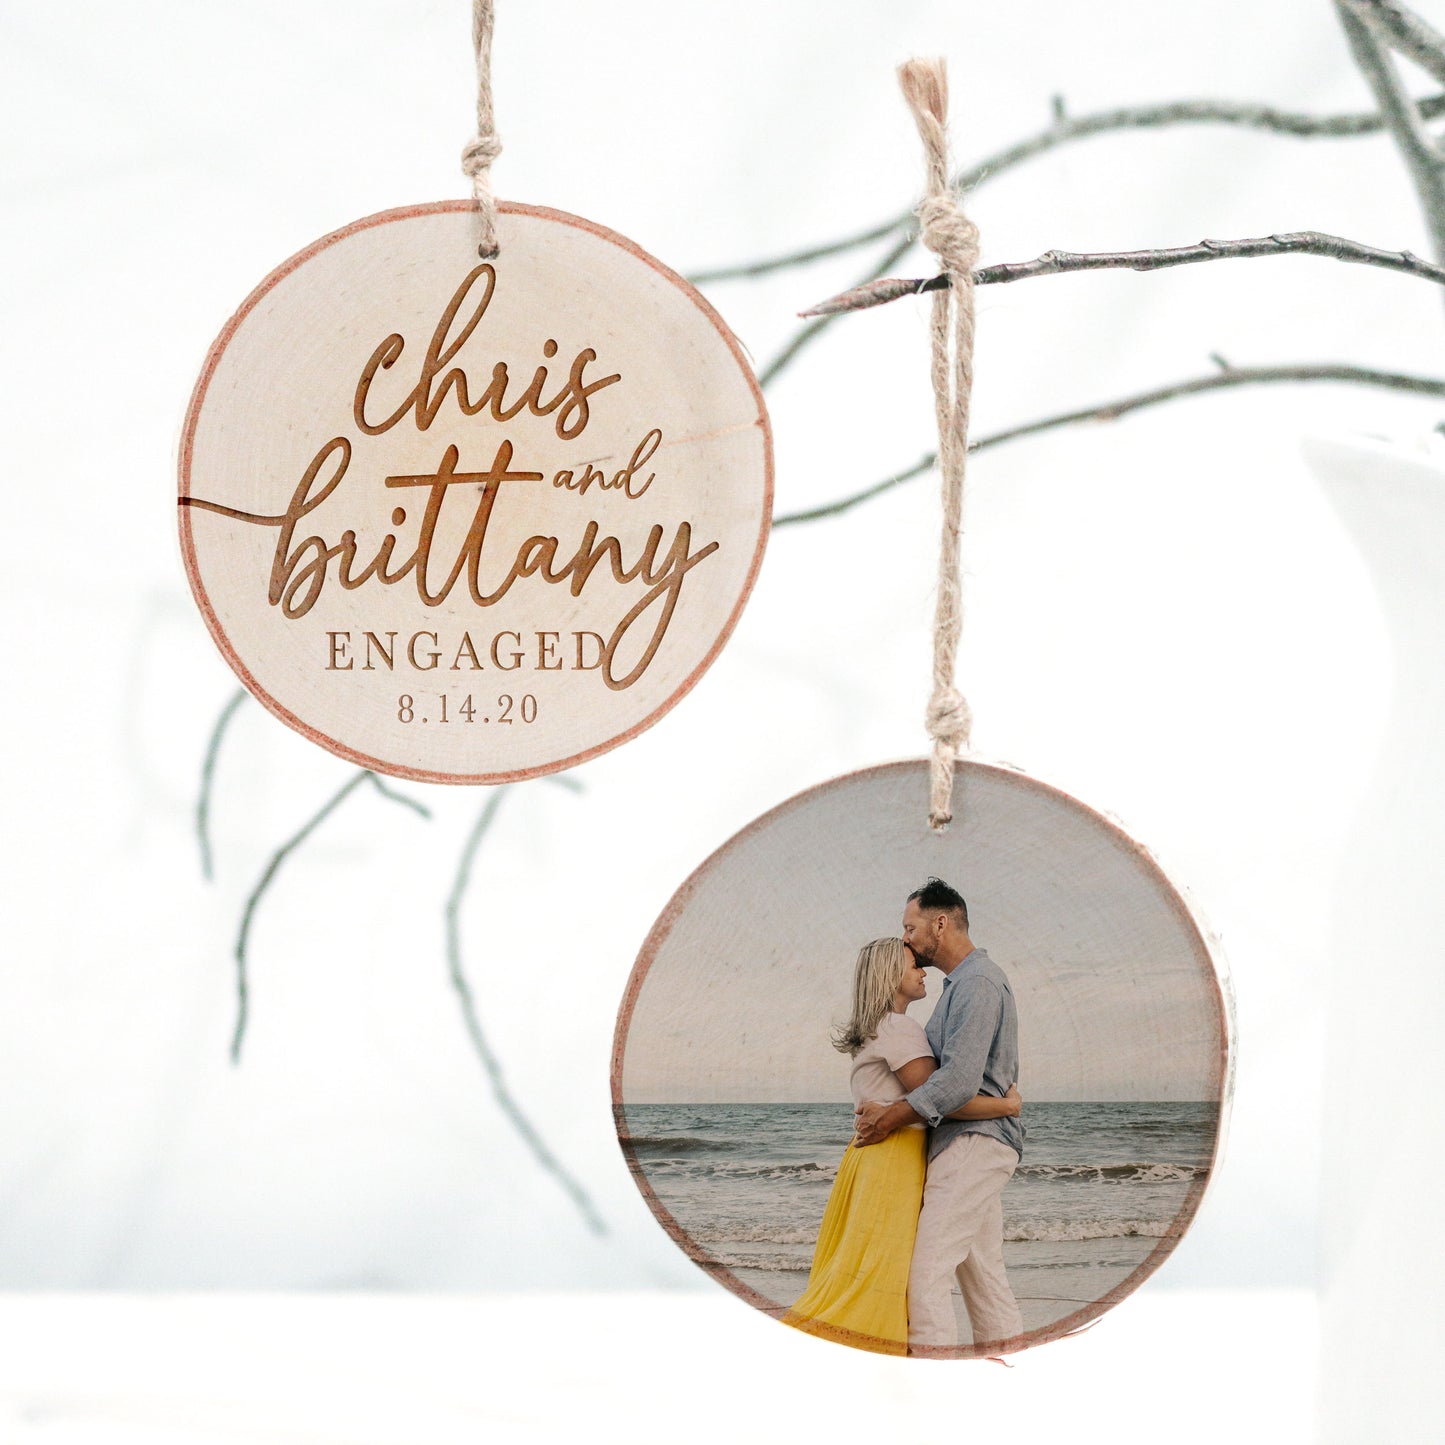 Engagement/Wedding Wood Slice Photo Ornament